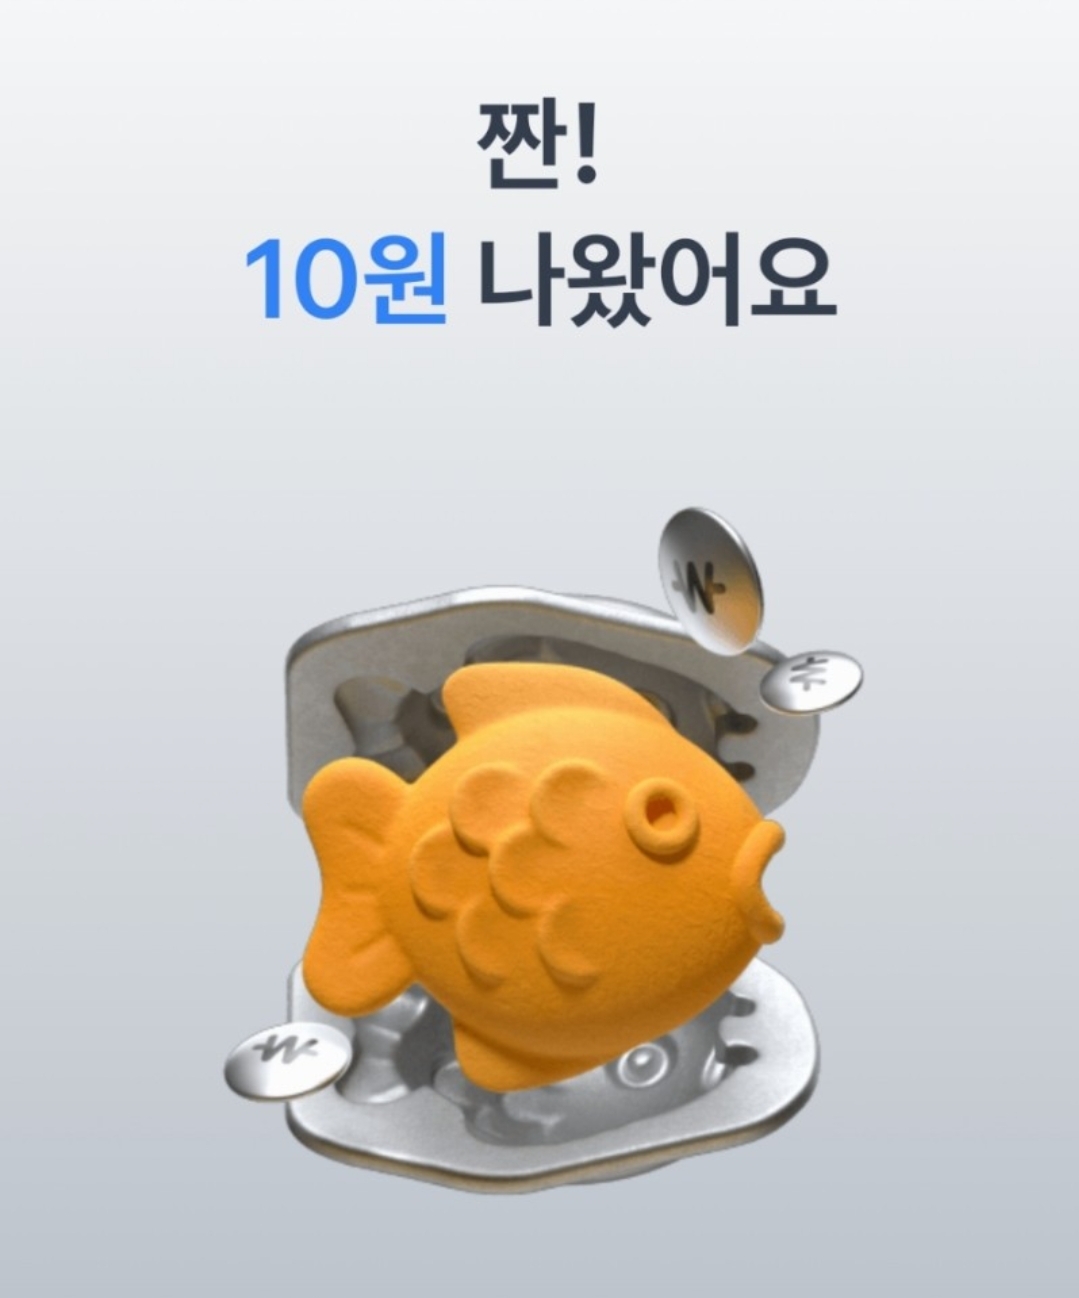 [앱테크] 토스 붕어빵 링크 378개 공유 (feat. 모르면 손해! 클릭해서 용돈 벌기!!)